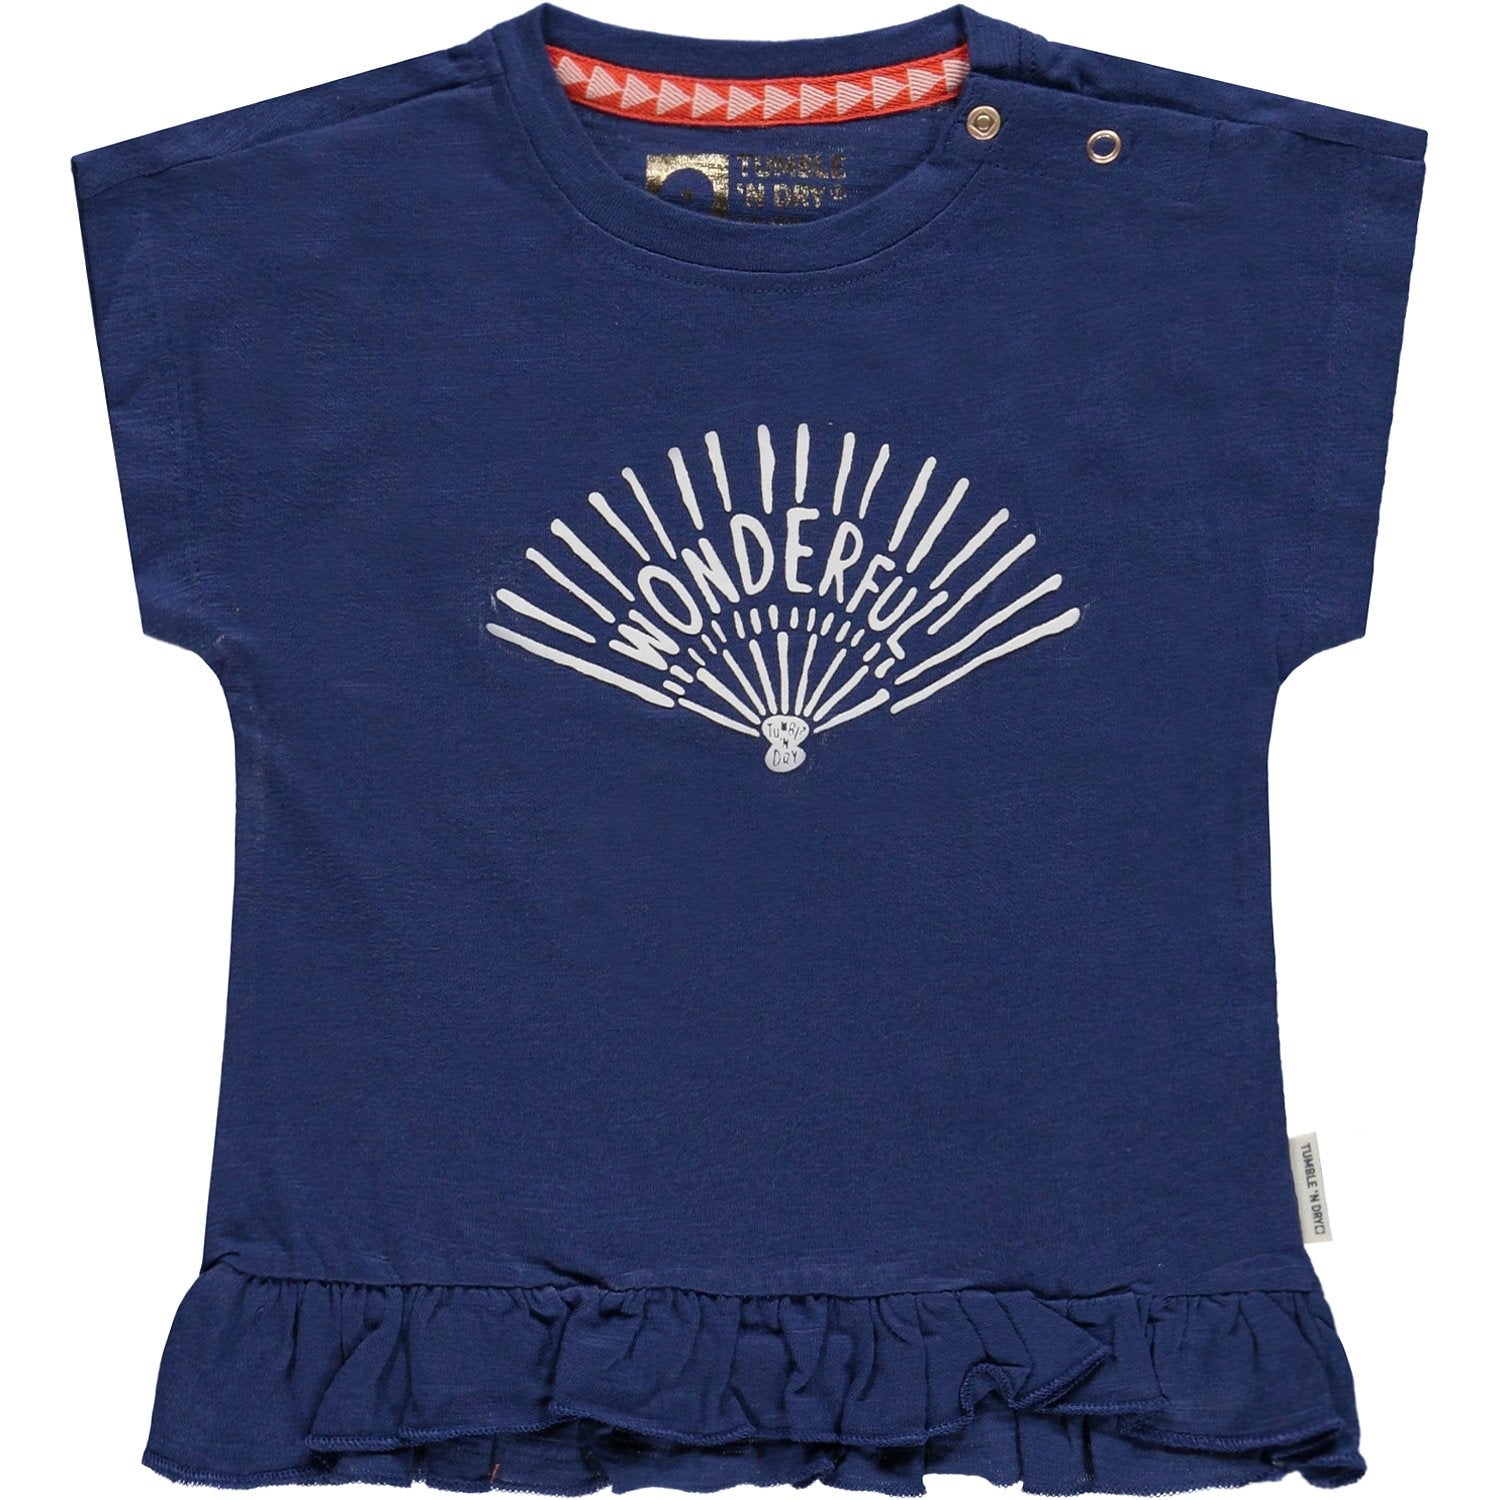 Baby Meisjes T-shirt Km O-hals van Tumble 'n Dry in de kleur Twilight blue in maat 86.